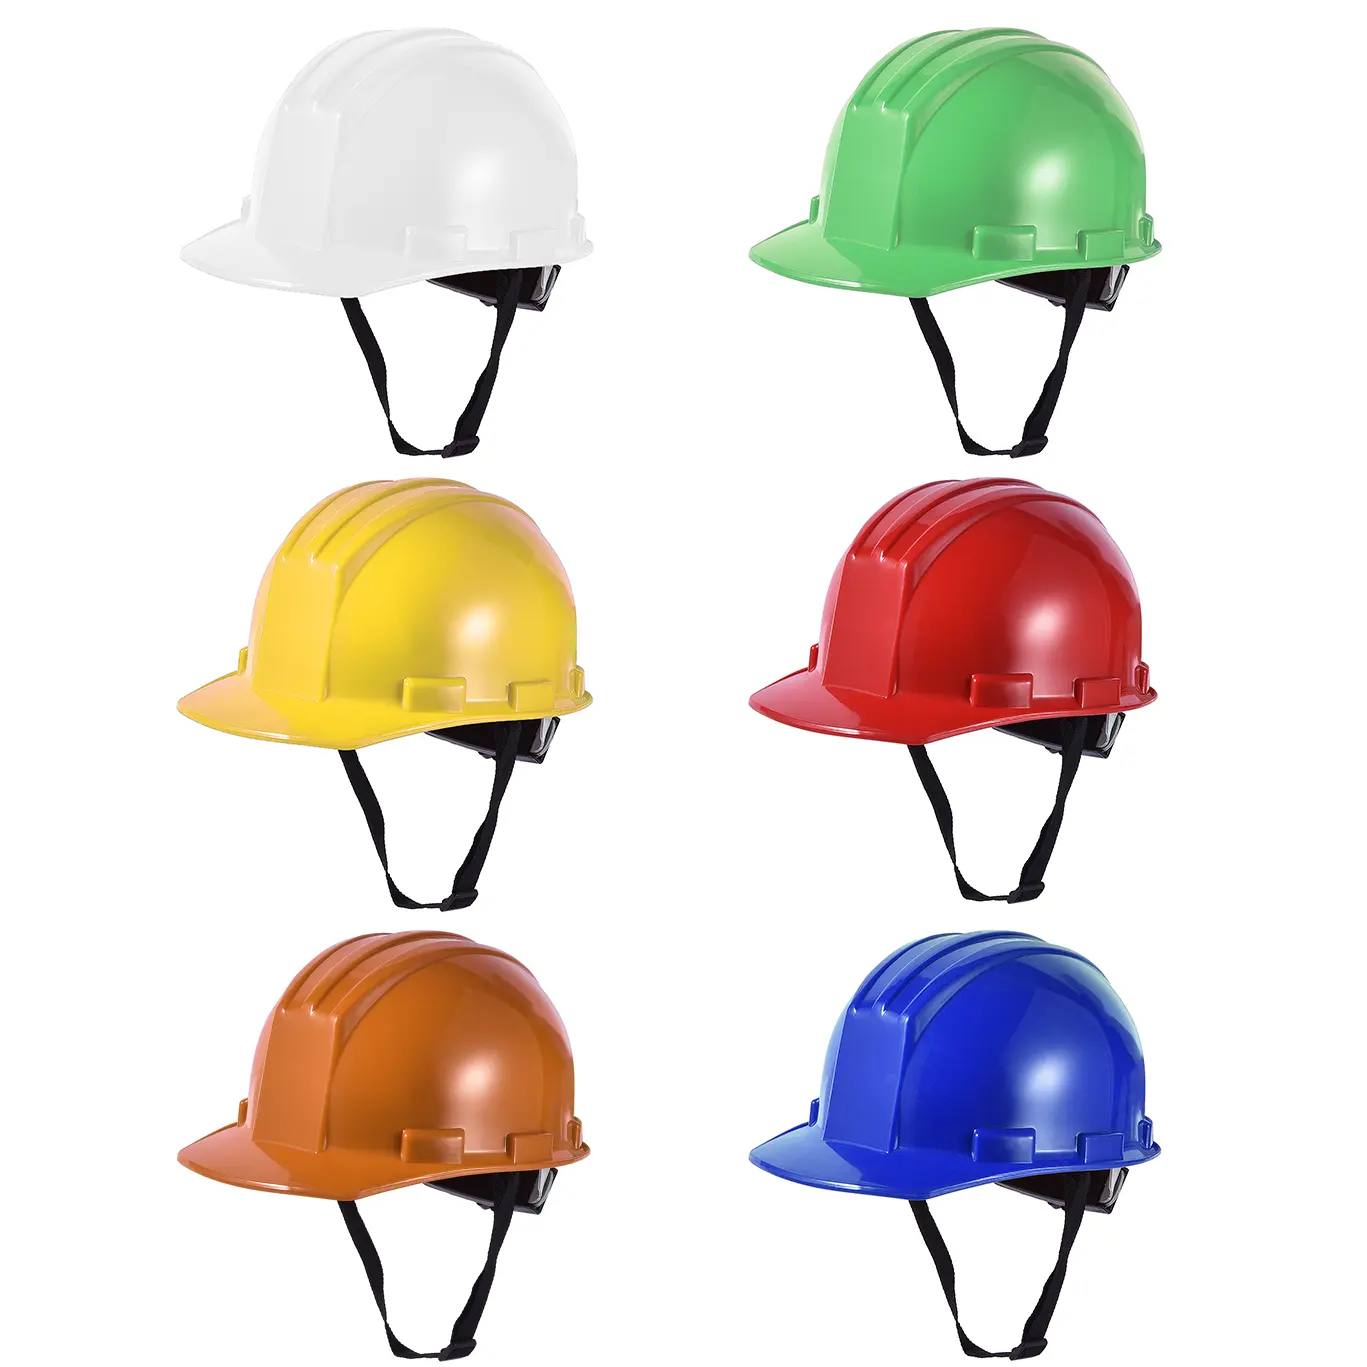 OEM ODM الجملة المصنع مباشرة خوذة أمان عالية الجودة HDPE الصلب قبعة مع CE صناعة البناء التعدين تأثير حماية